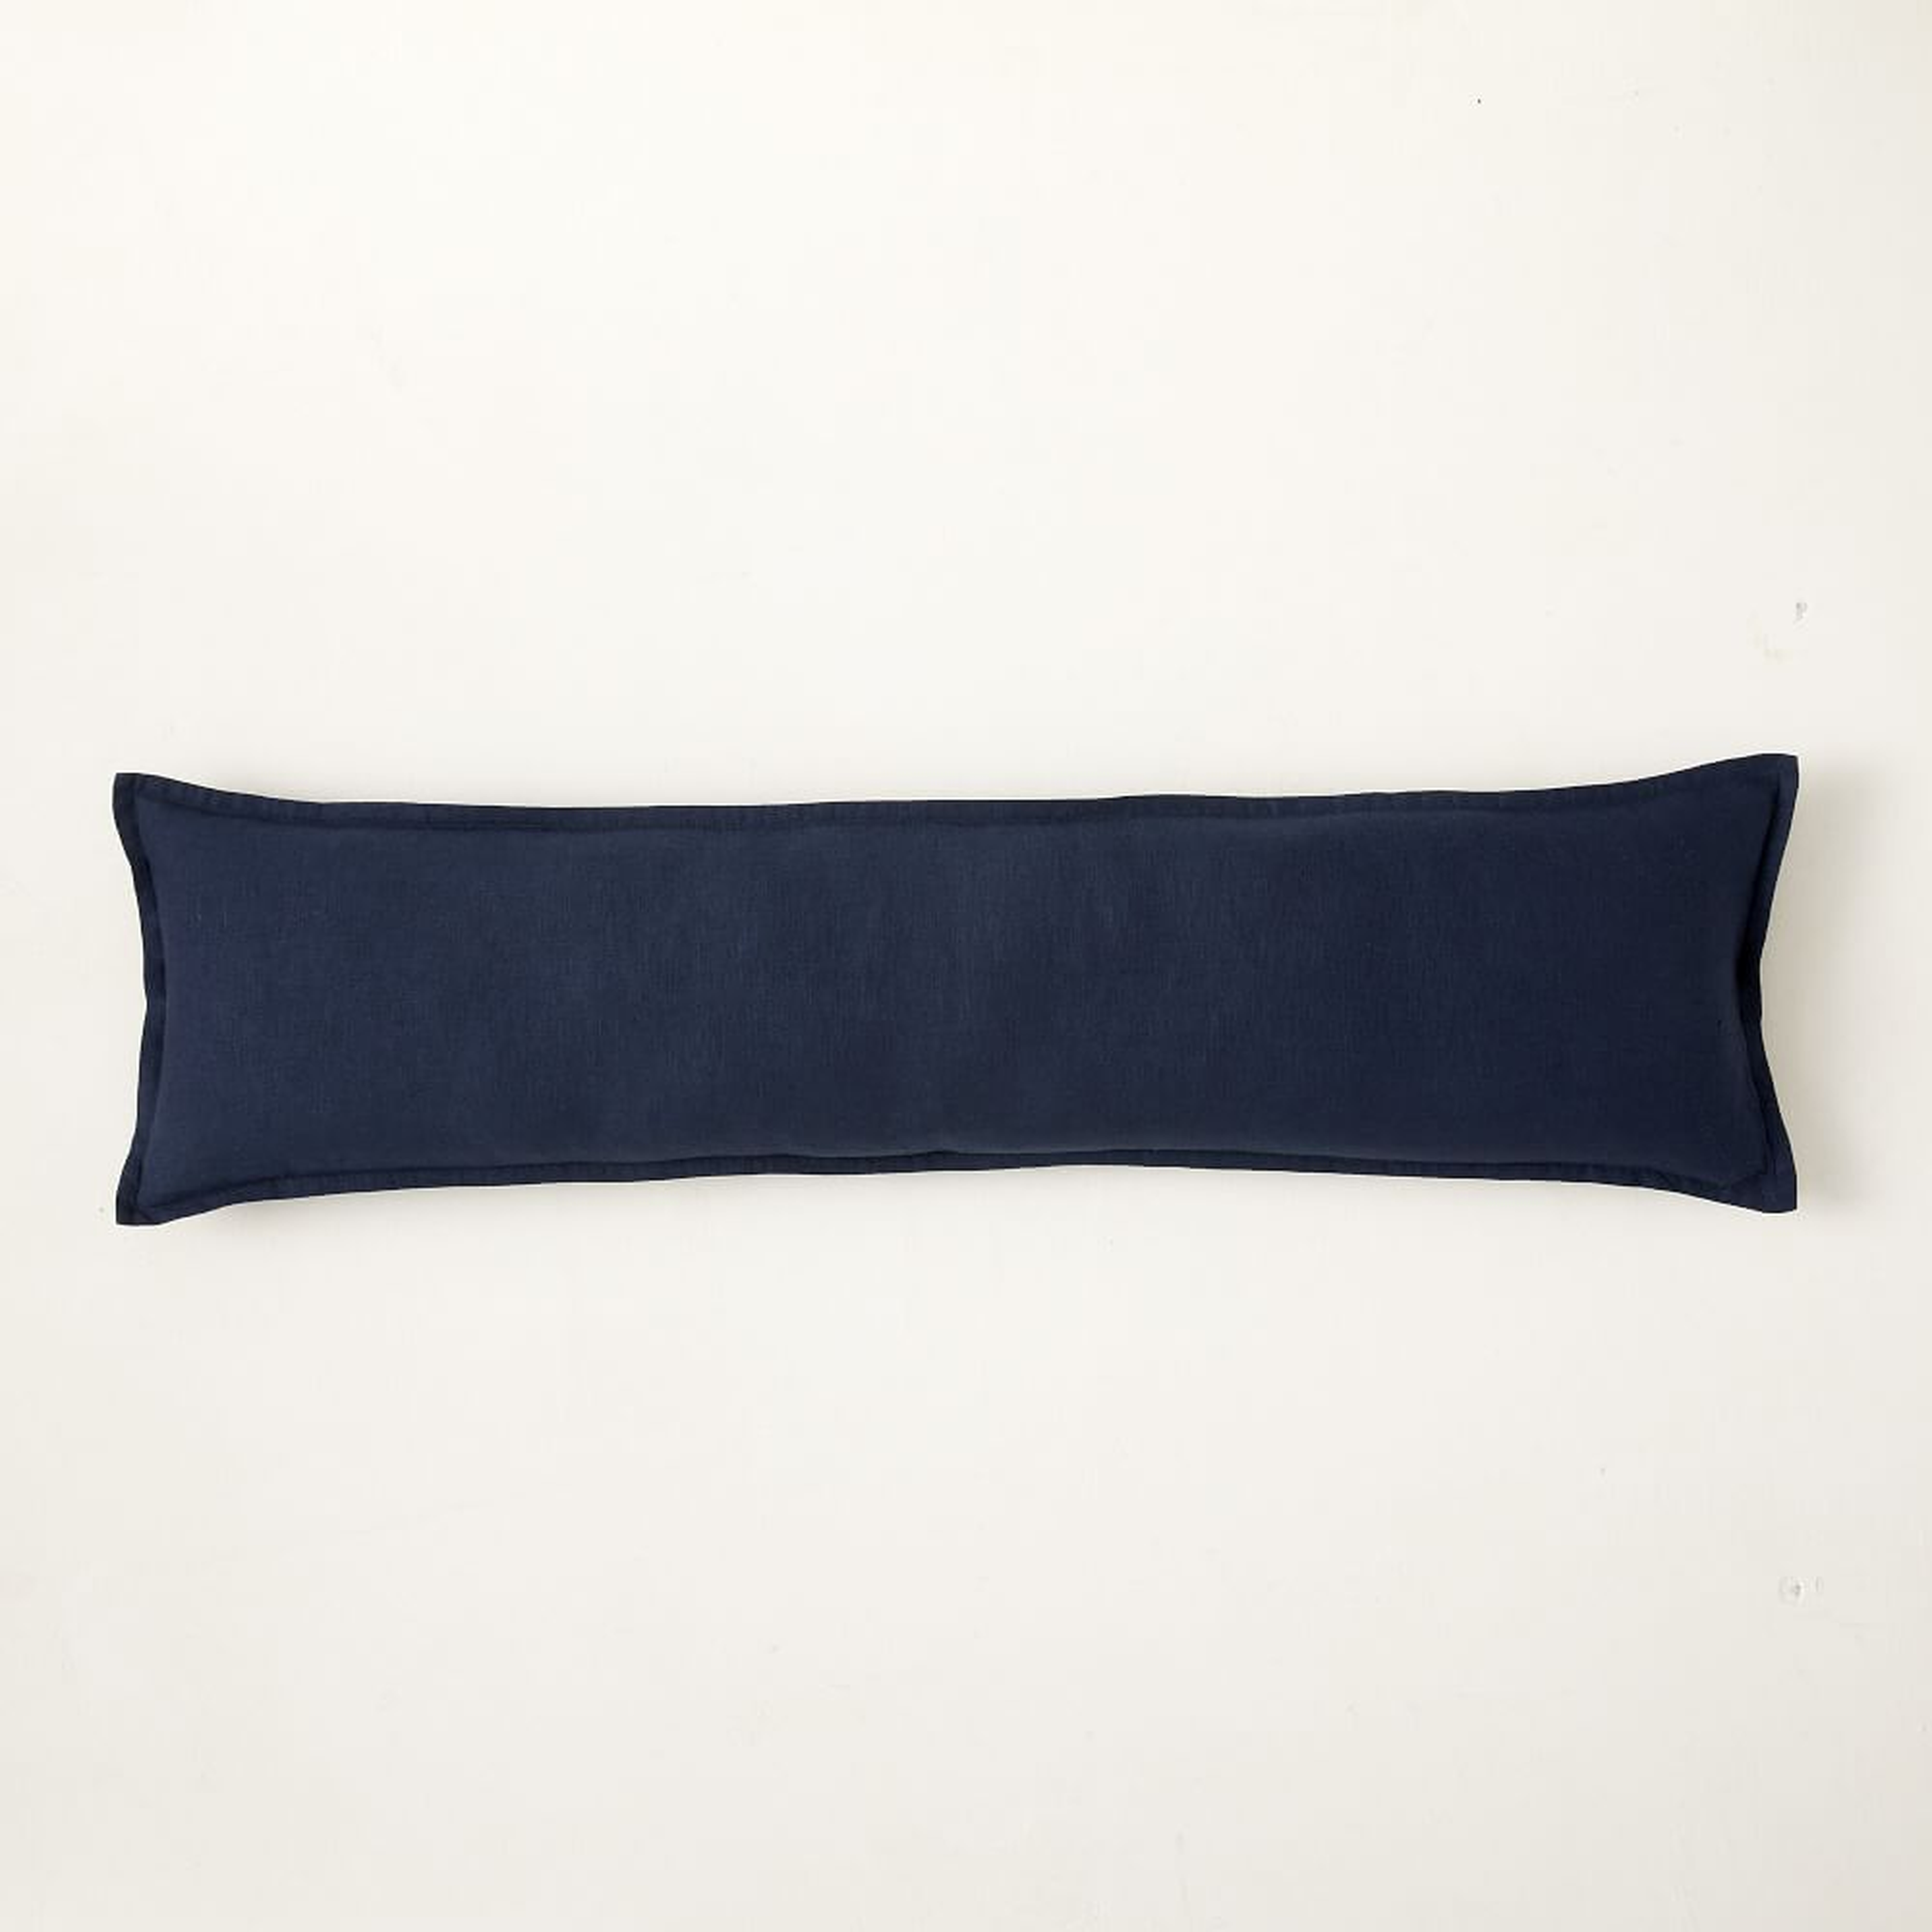 European Flax Linen Pillow Cover, 12"x46", Midnight - West Elm